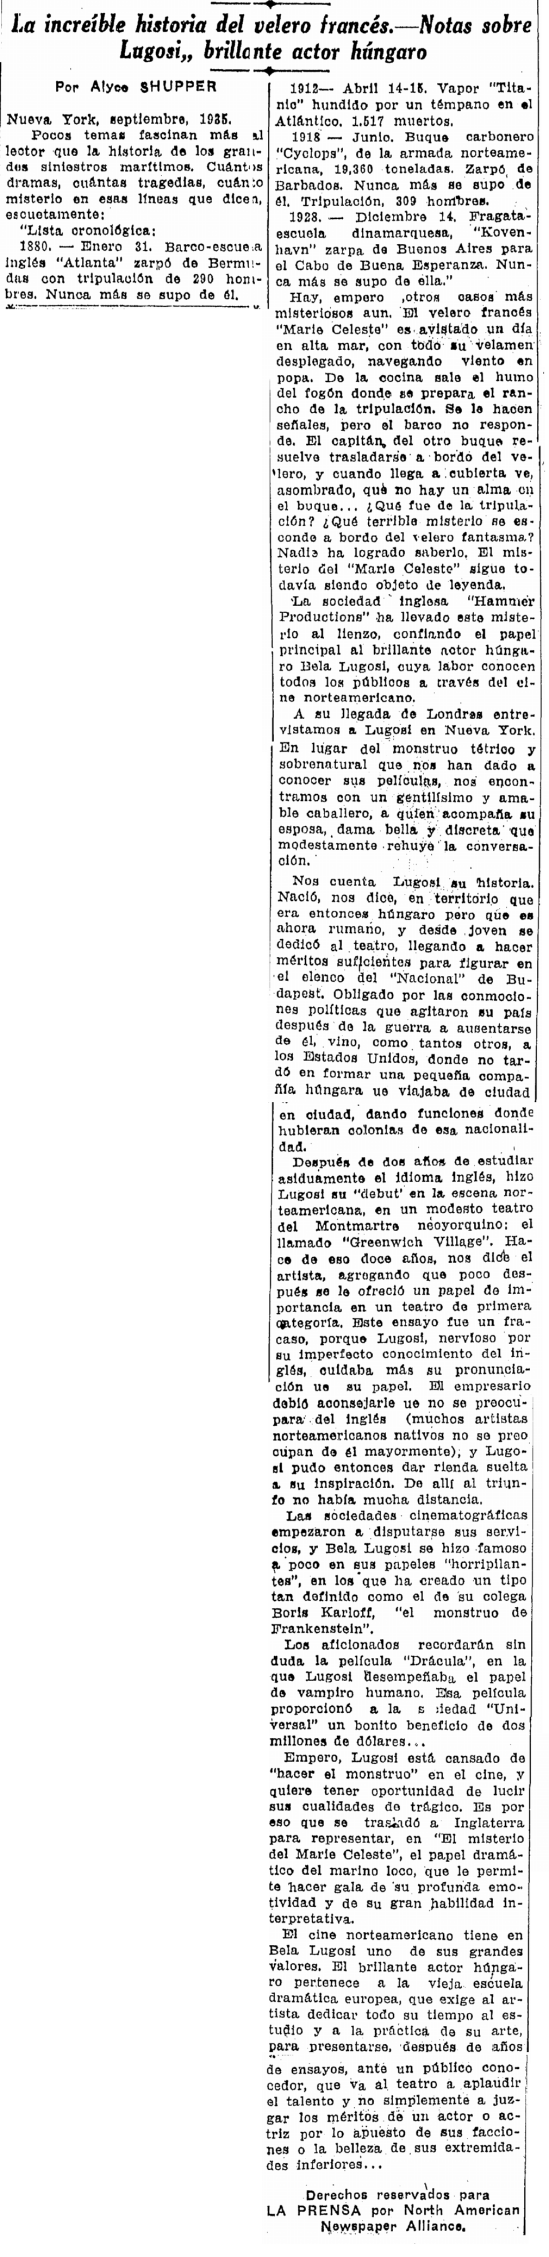 Mystery of the Mary Celeste, Prensa - San Antonio, September 8, 1935